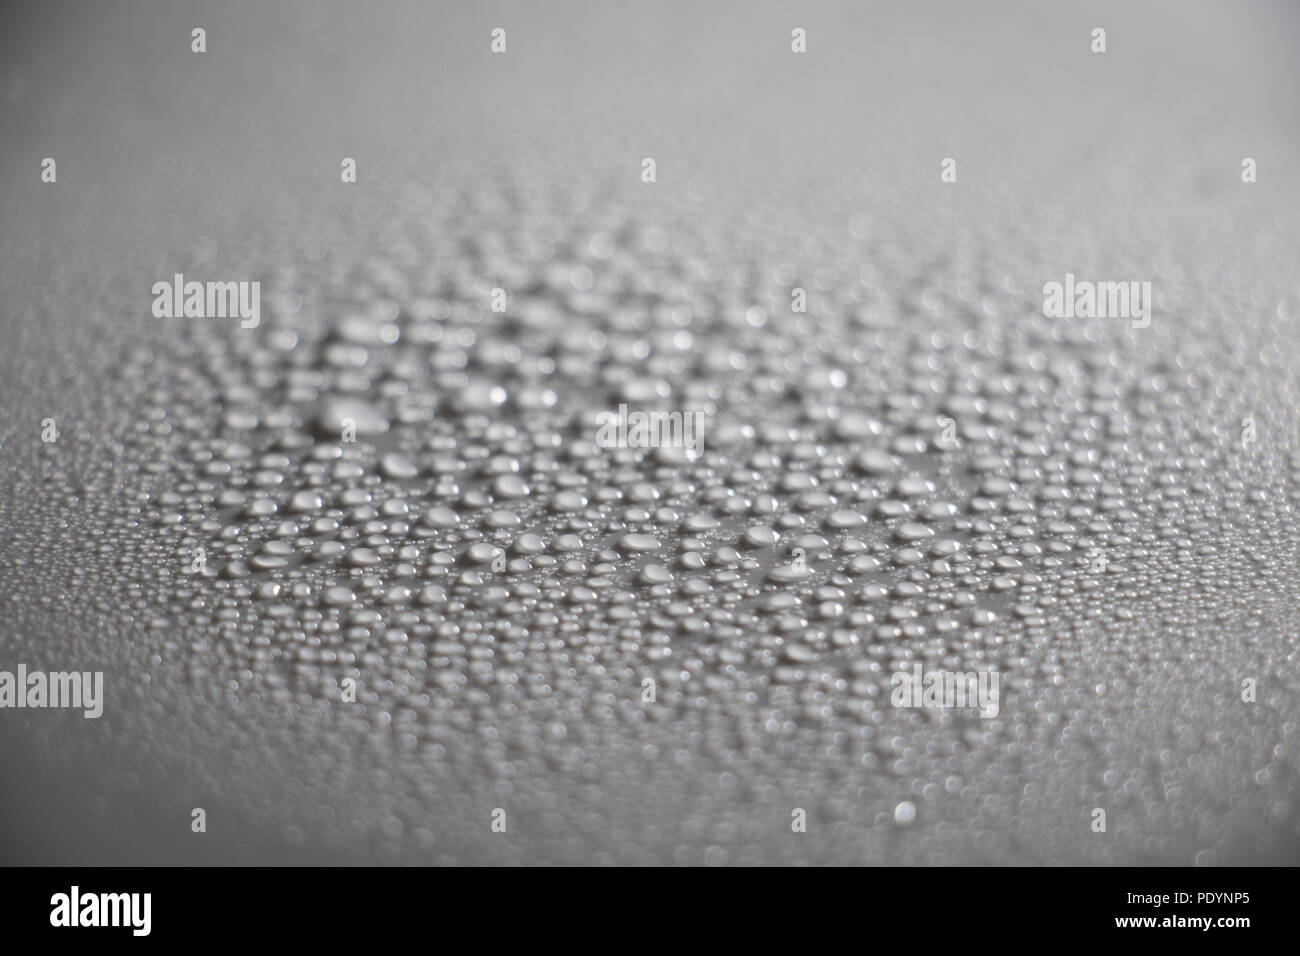 Les gouttelettes d'eau qui se forme sur une surface blanche. Perles de la condensation de l'eau formant abstract background textures. Gouttes d'eau de la brume. Banque D'Images